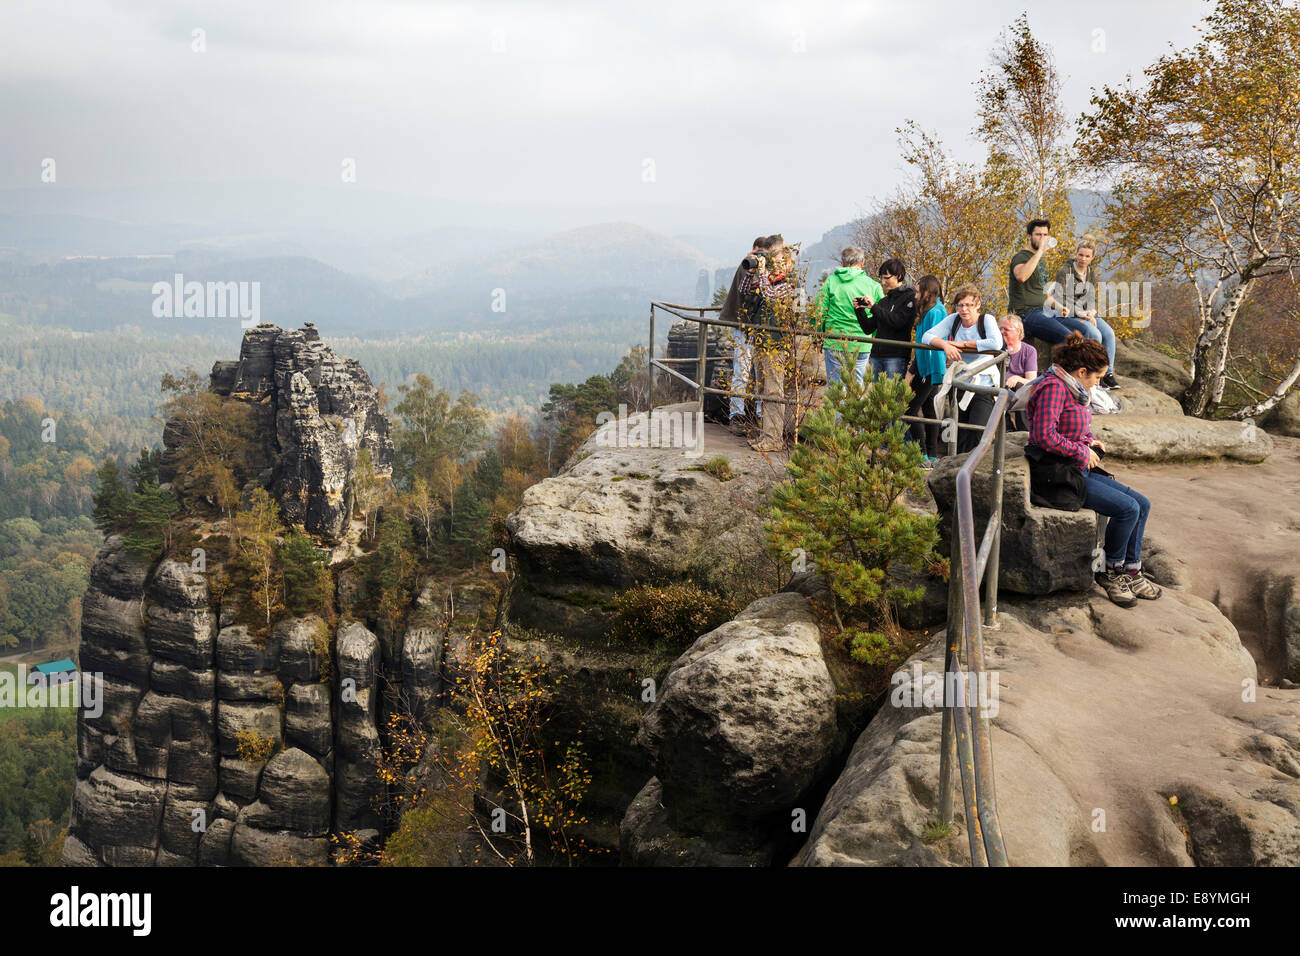 Hikers at the Schrammstein viewing point, Sachsische Schweiz, Saxony, Germany Stock Photo